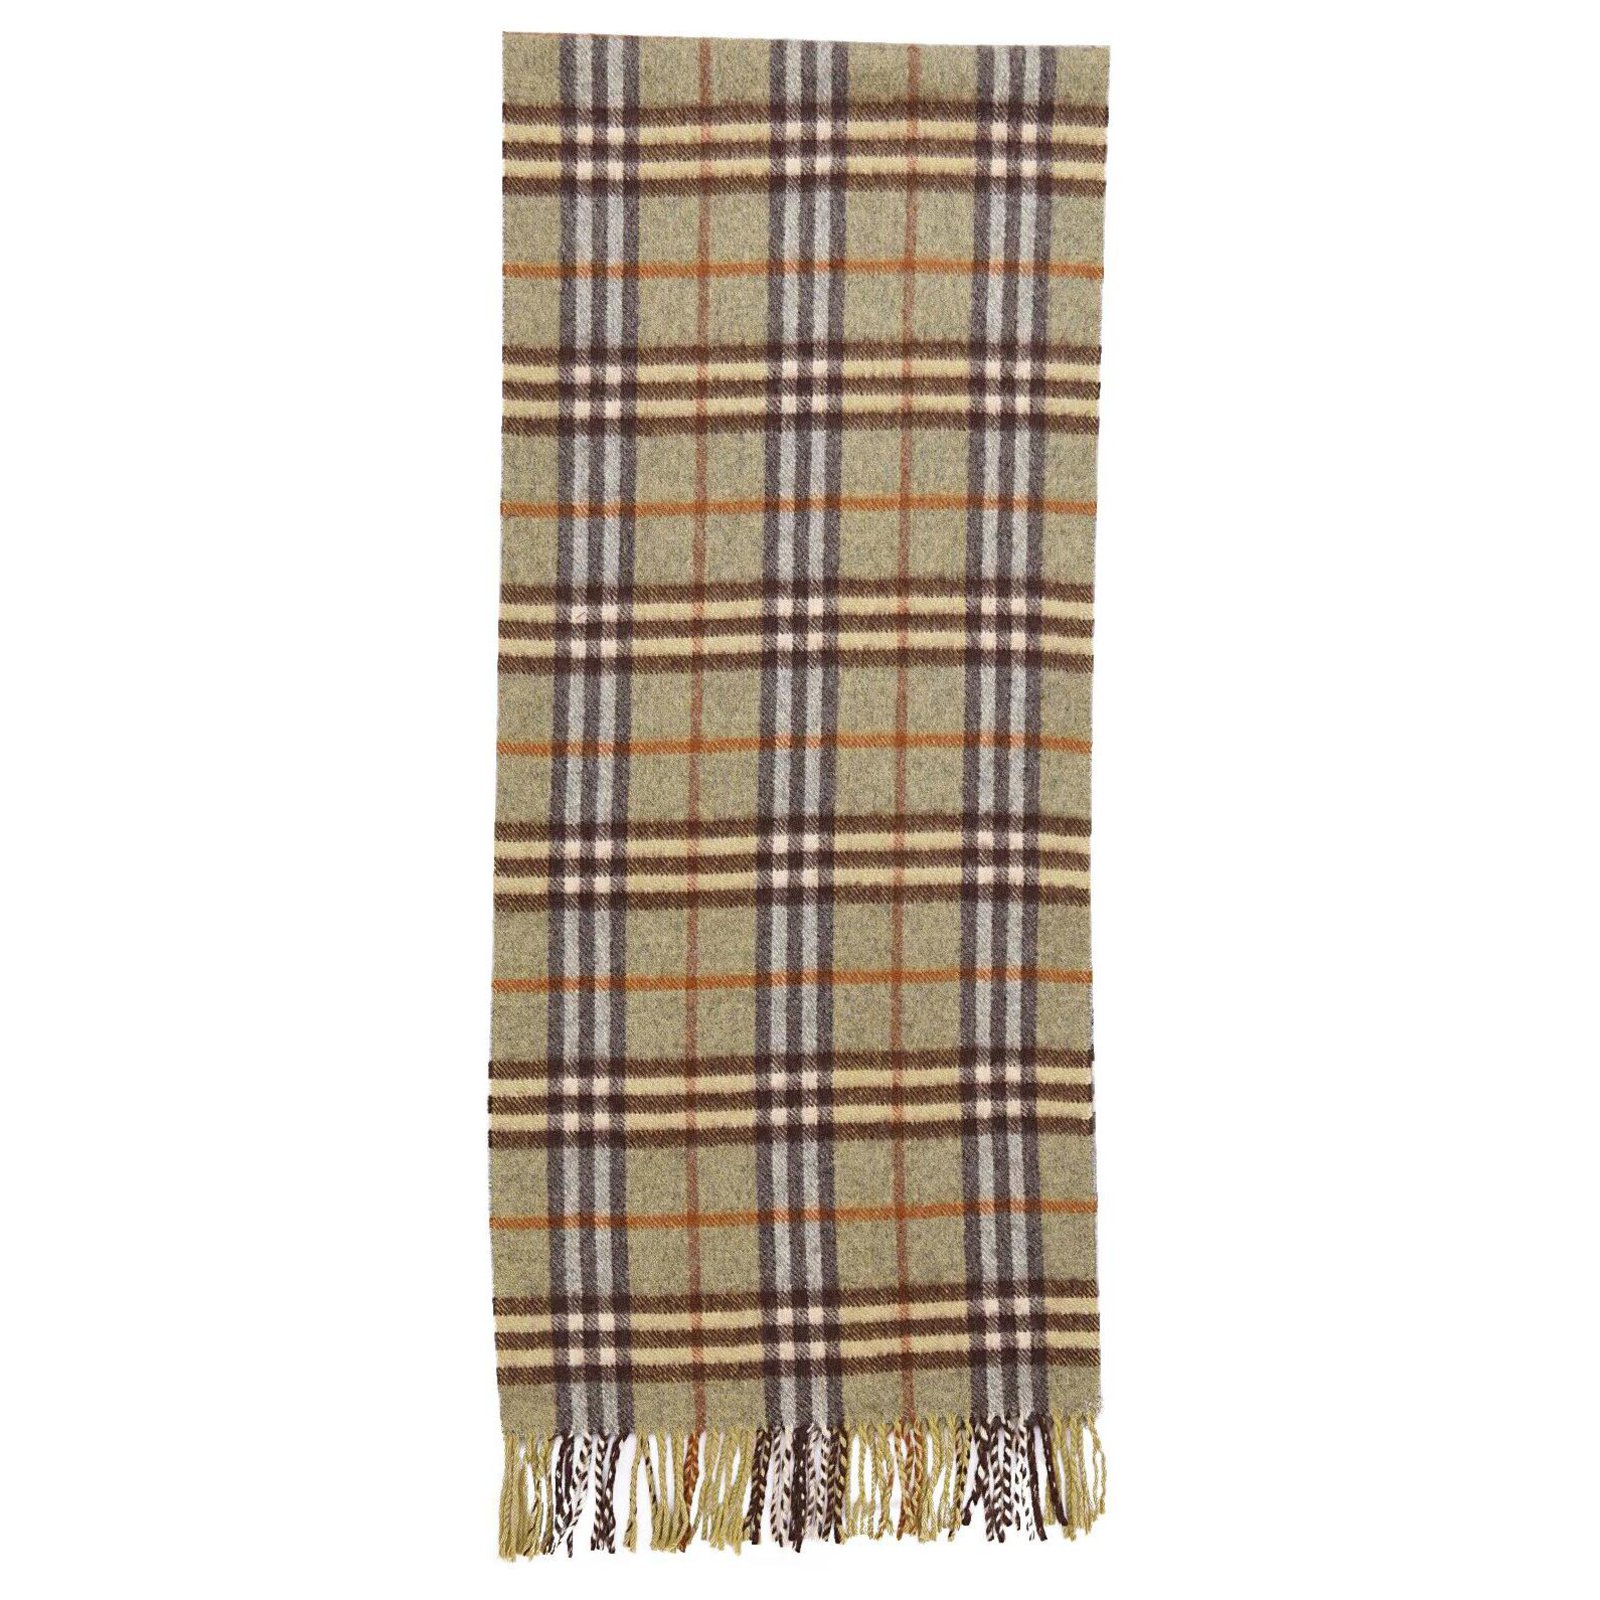 burberry nova check cashmere scarf